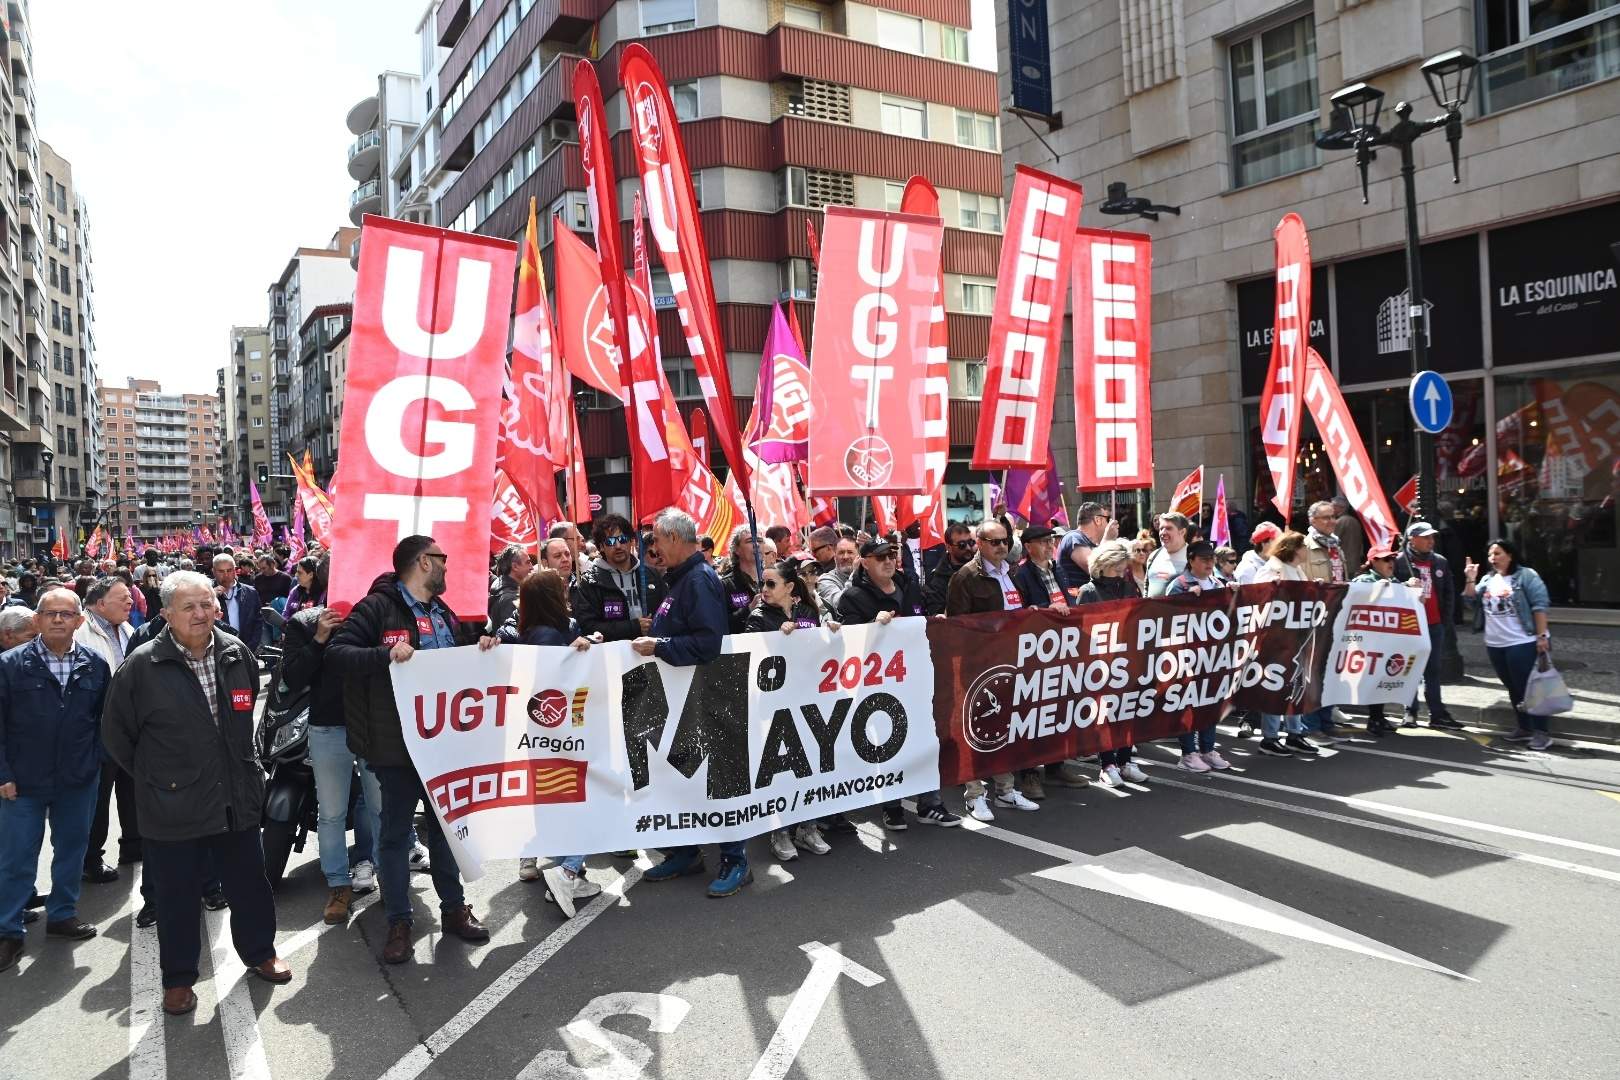 Subida salarial y menos jornada, principales reclamaciones en la manifestación de Zaragoza